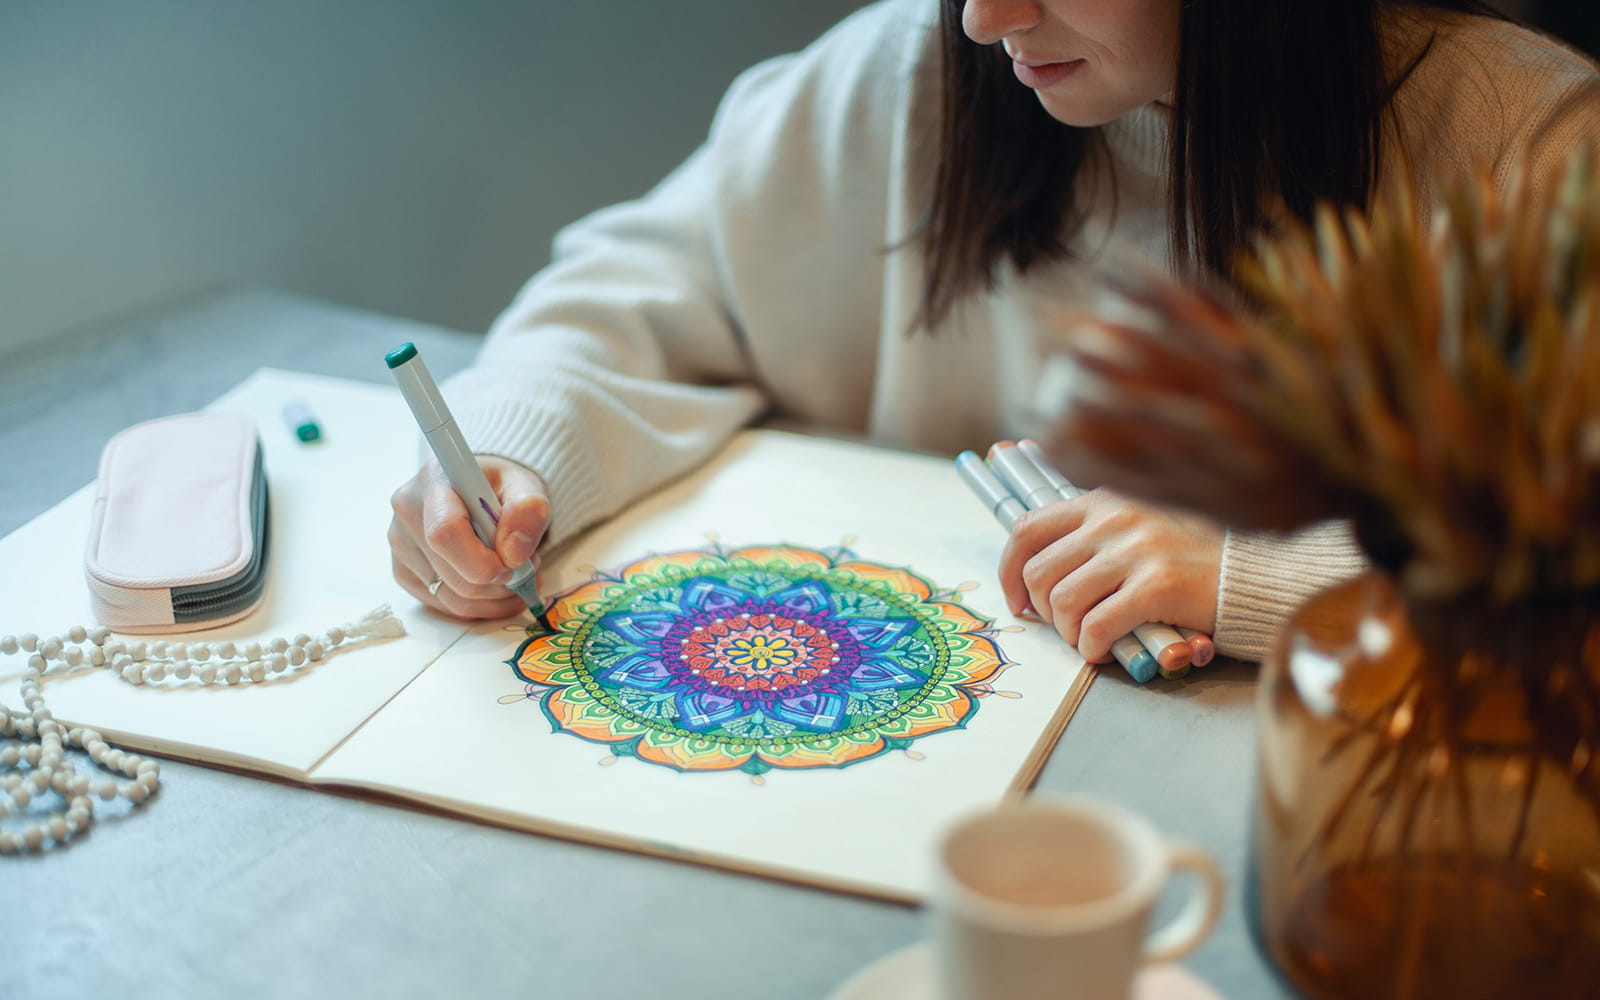 Vrouw kleurt in mandala tekening in regenboogkleuren